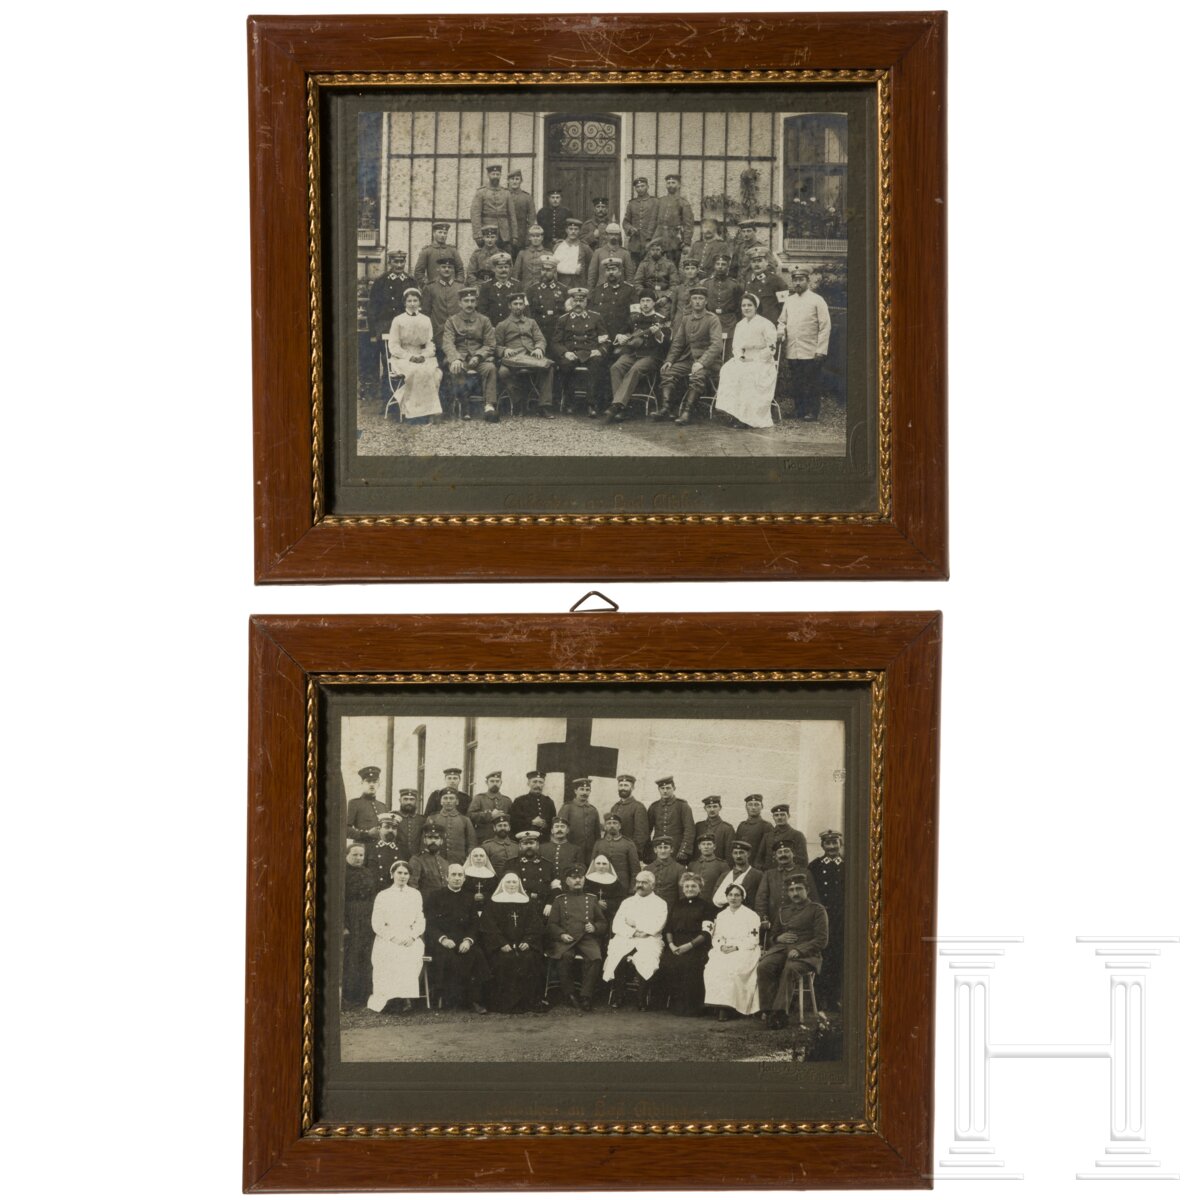 Militärisches Fotoalbum, zwei Koppelschlösser, Auszeichnungen etc., um 1870 - 1945 - Image 2 of 7